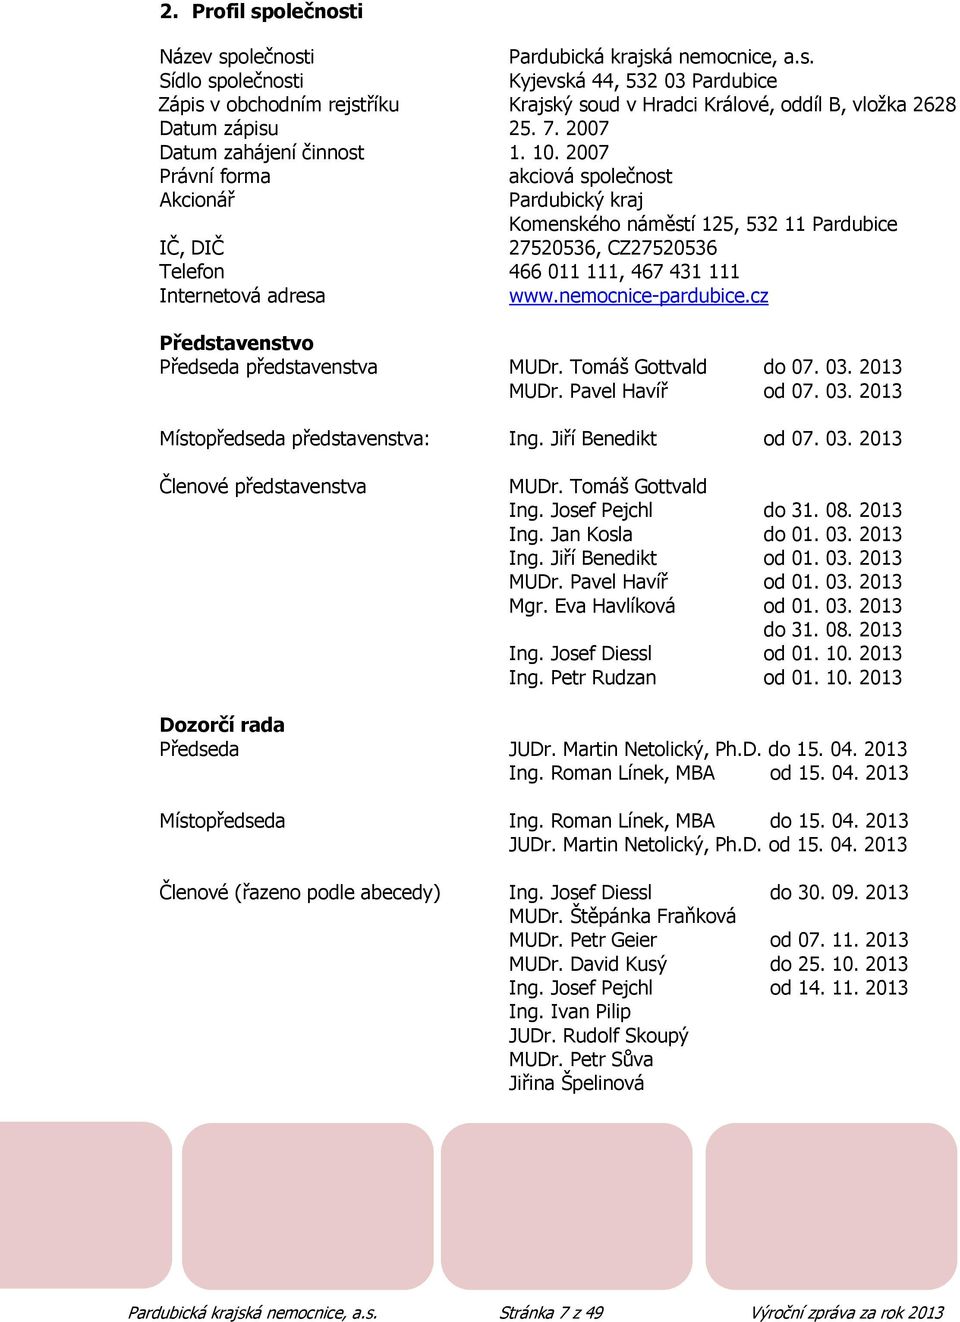 2007 Právní forma akciová společnost Akcionář Pardubický kraj Komenského náměstí 125, 532 11 Pardubice IČ, DIČ 27520536, CZ27520536 Telefon 466 011 111, 467 431 111 Internetová adresa www.